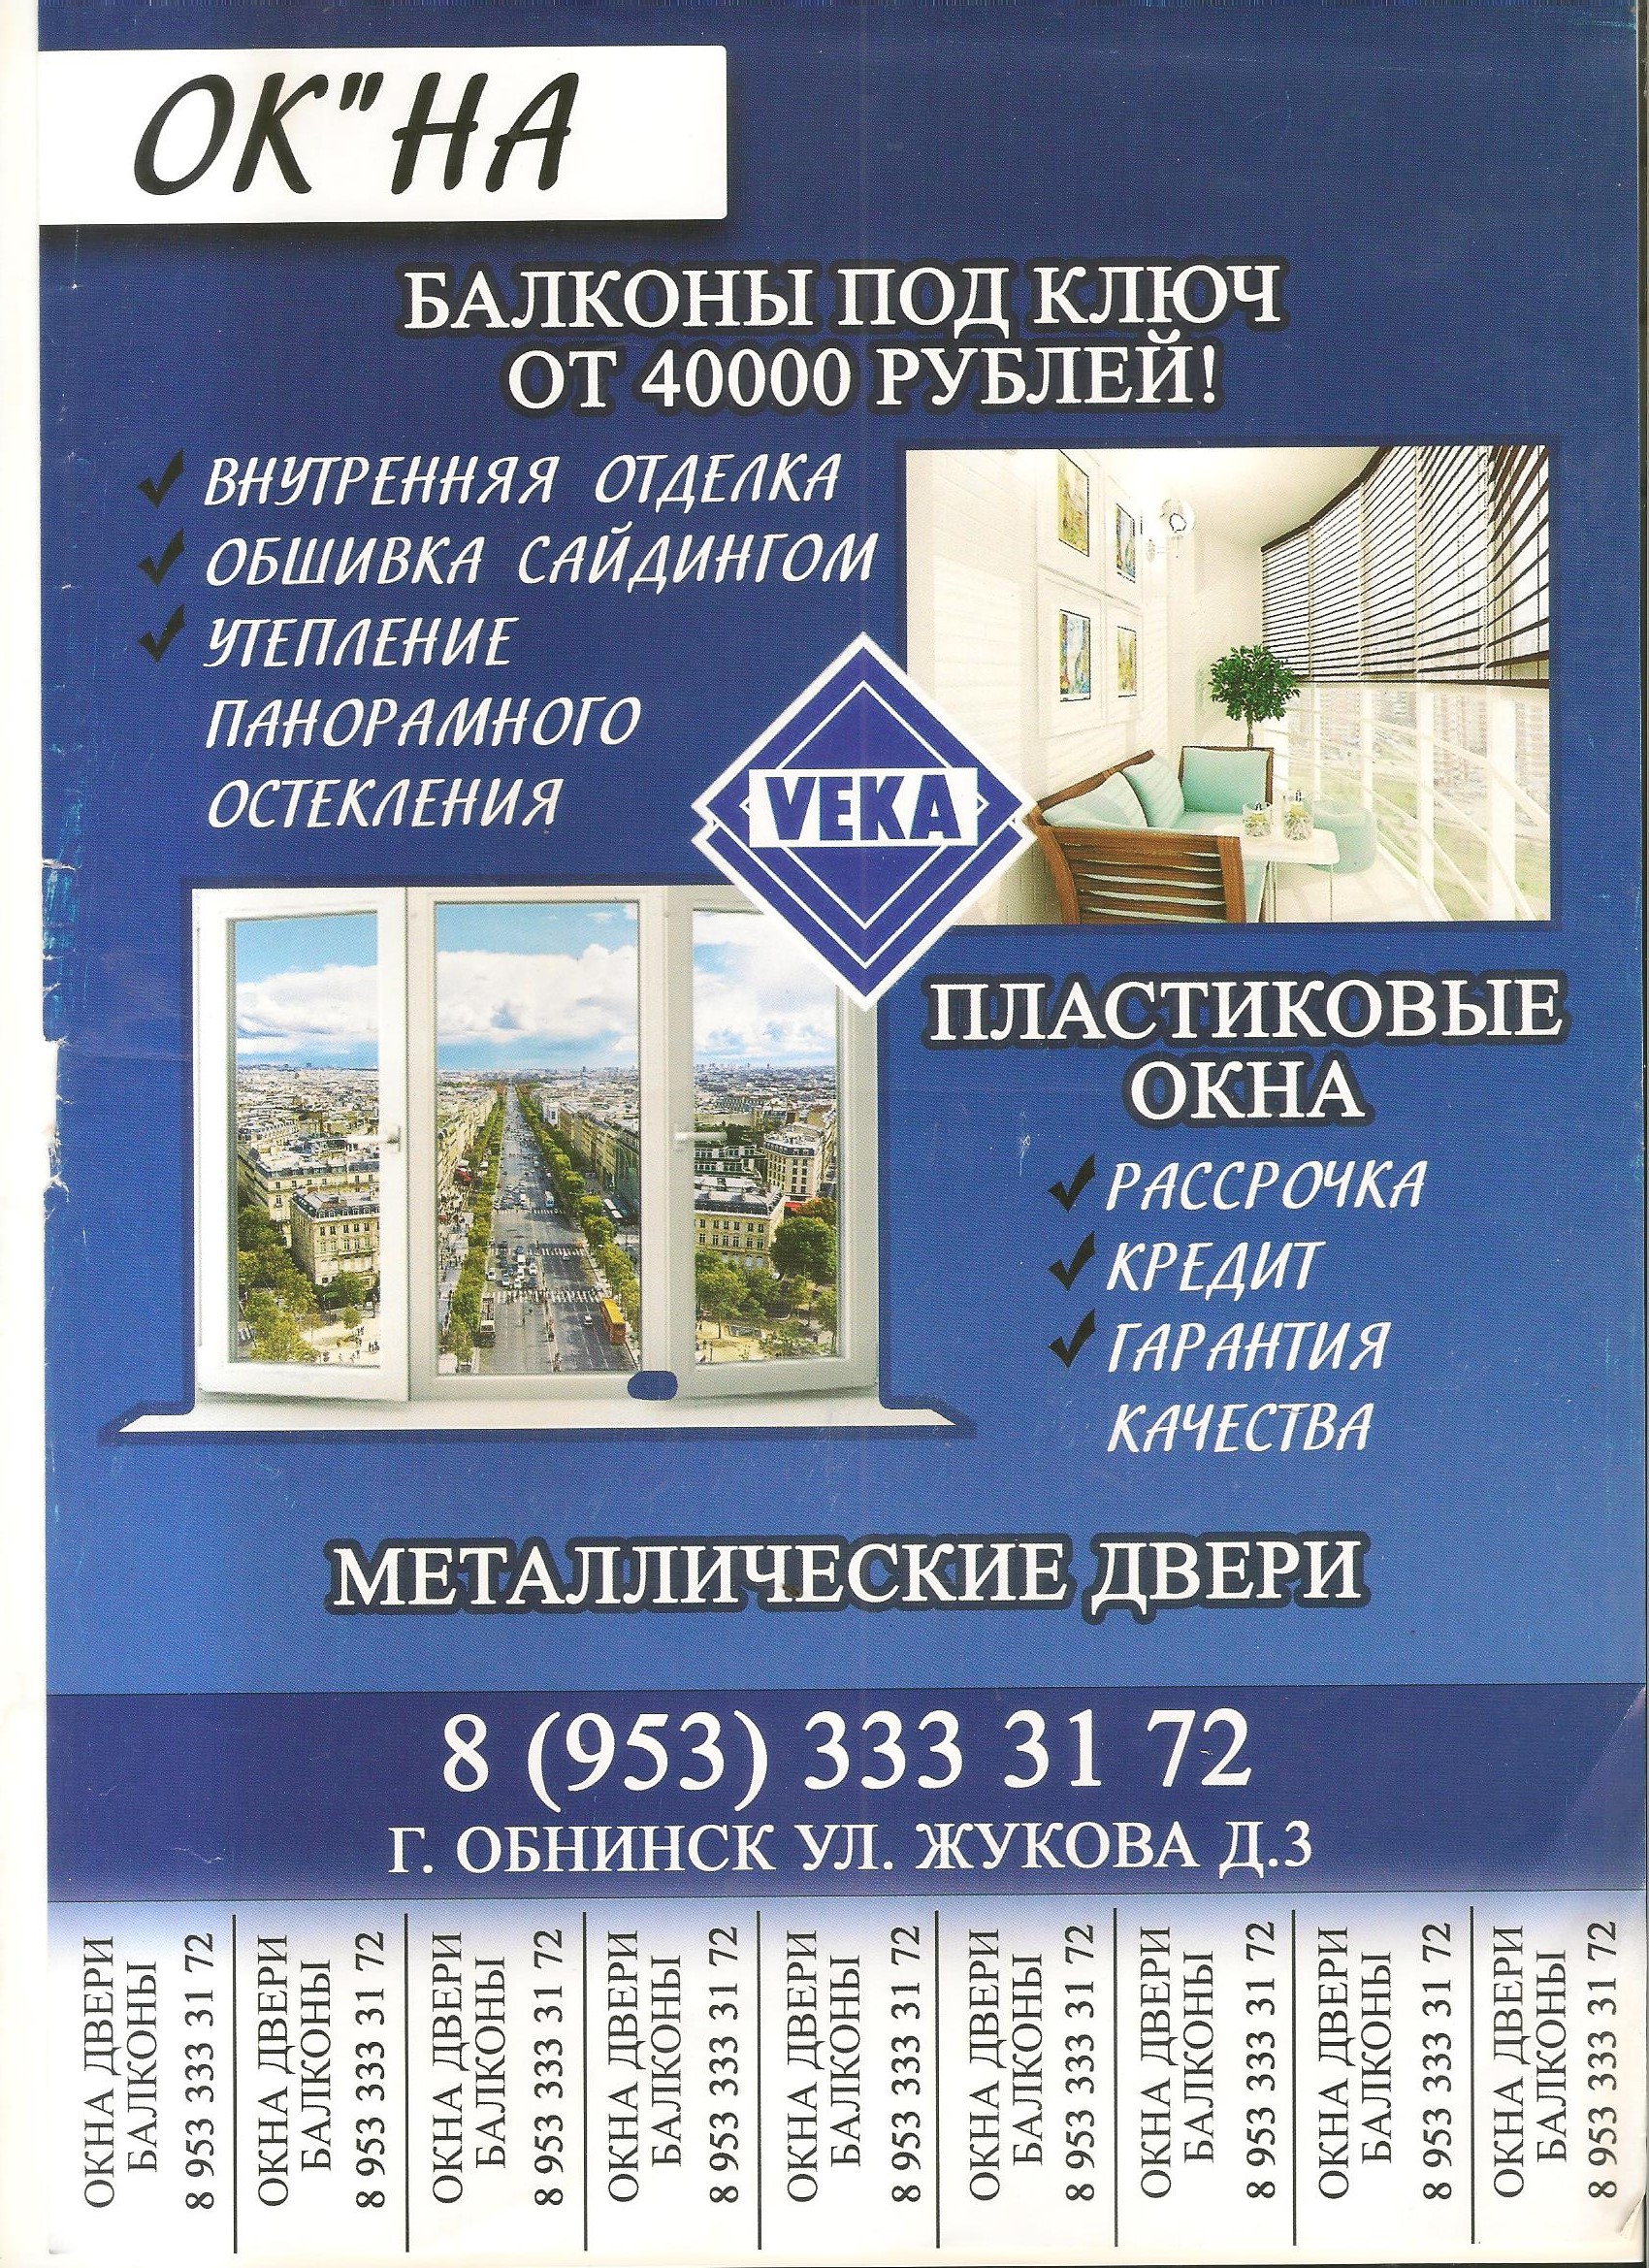 реклама листовка объявление окна балконы